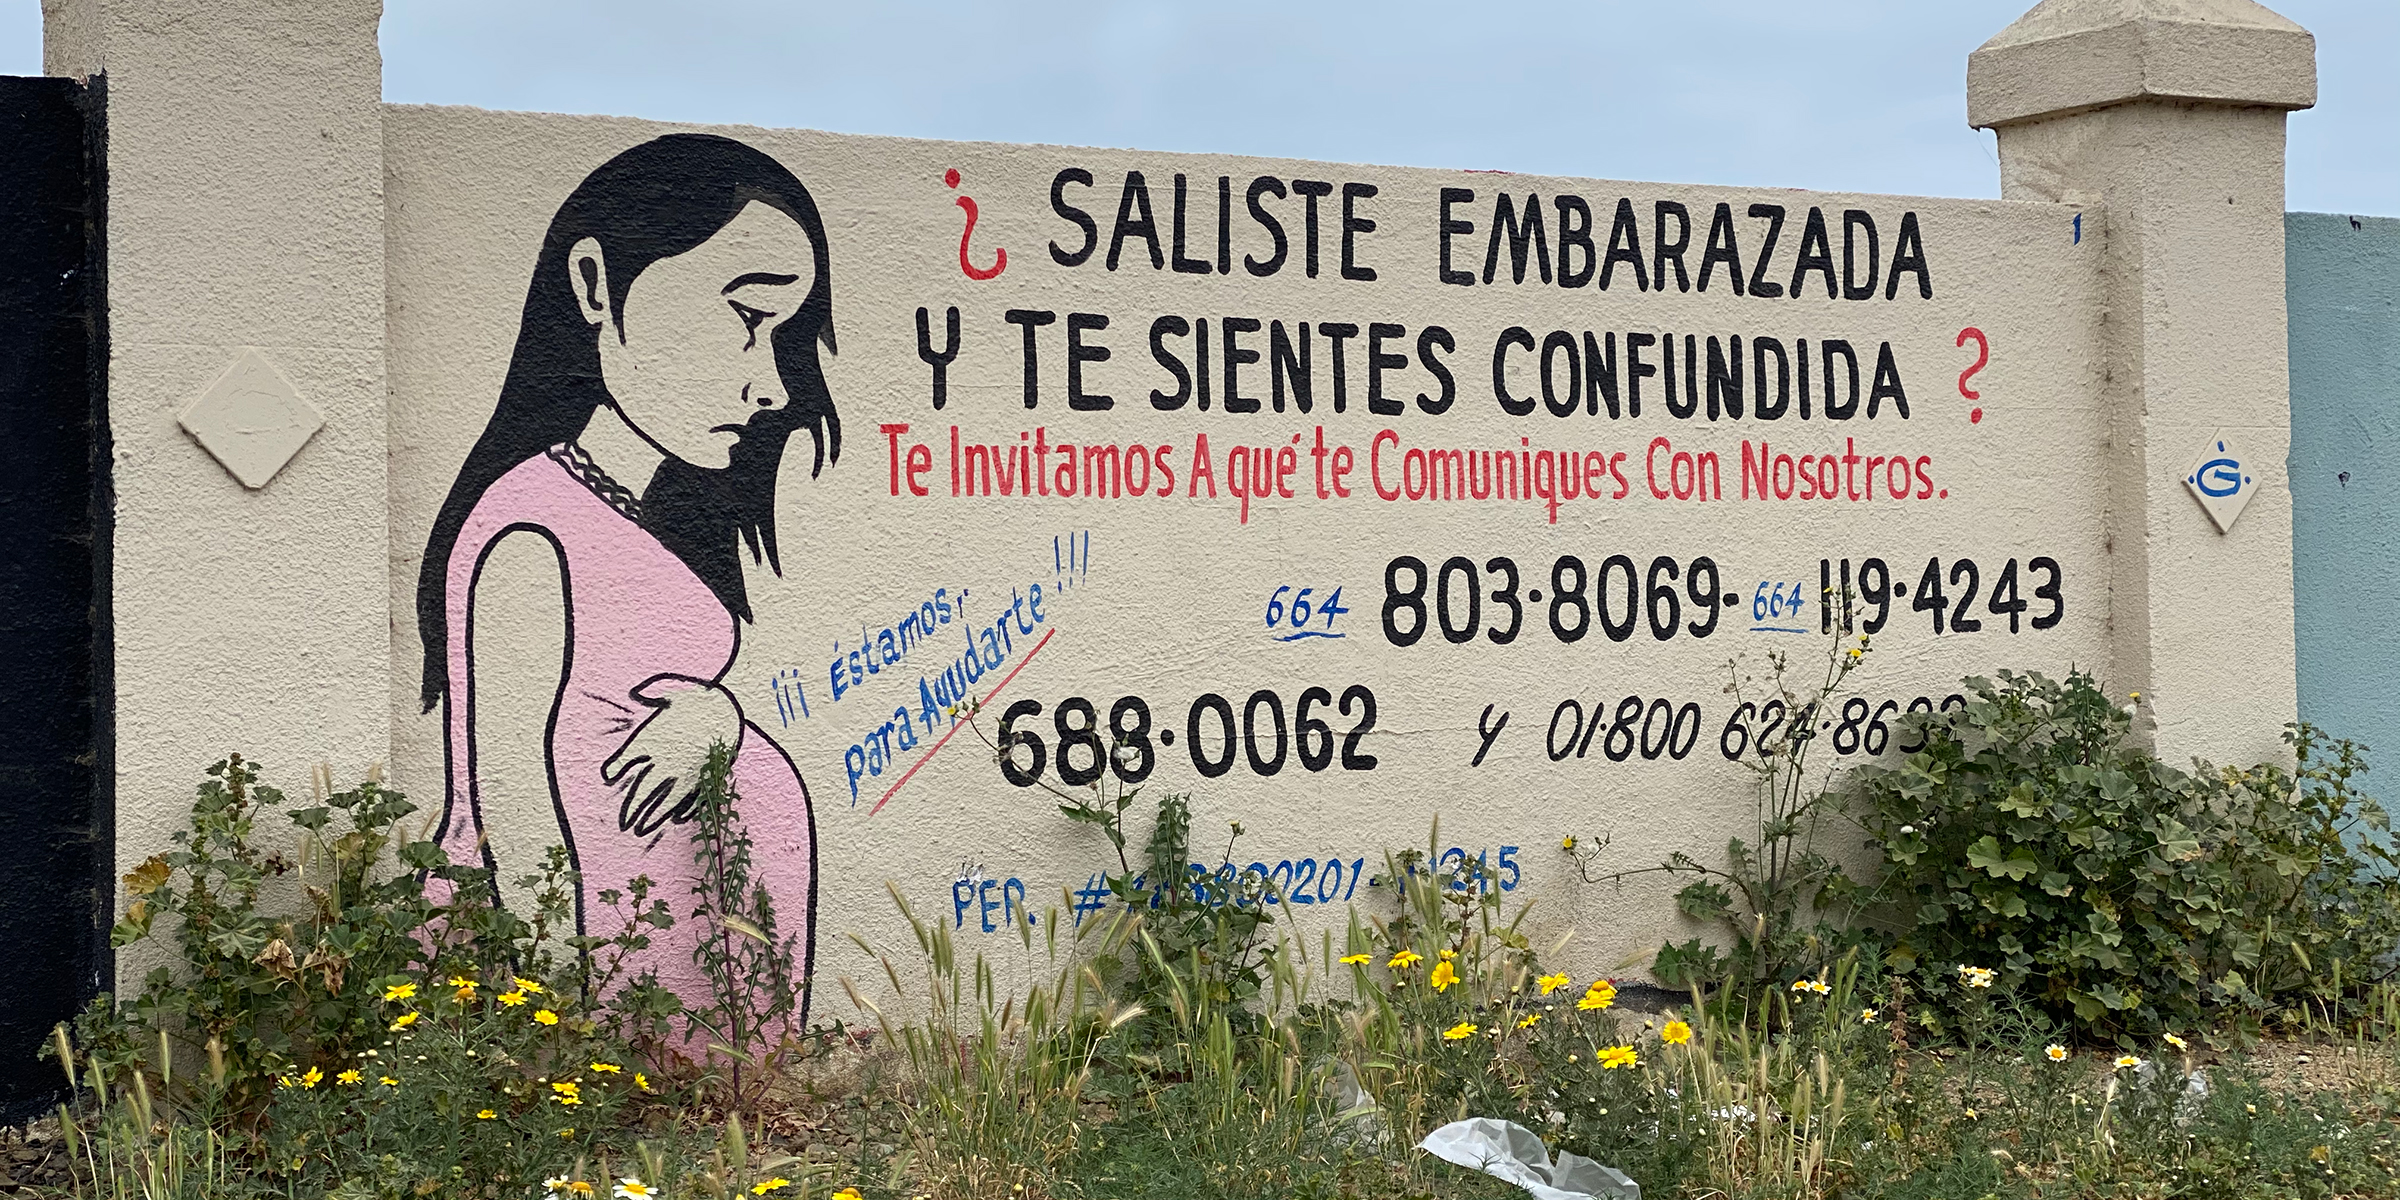 Border Crisis: How pregnant migrants fall prey of violence